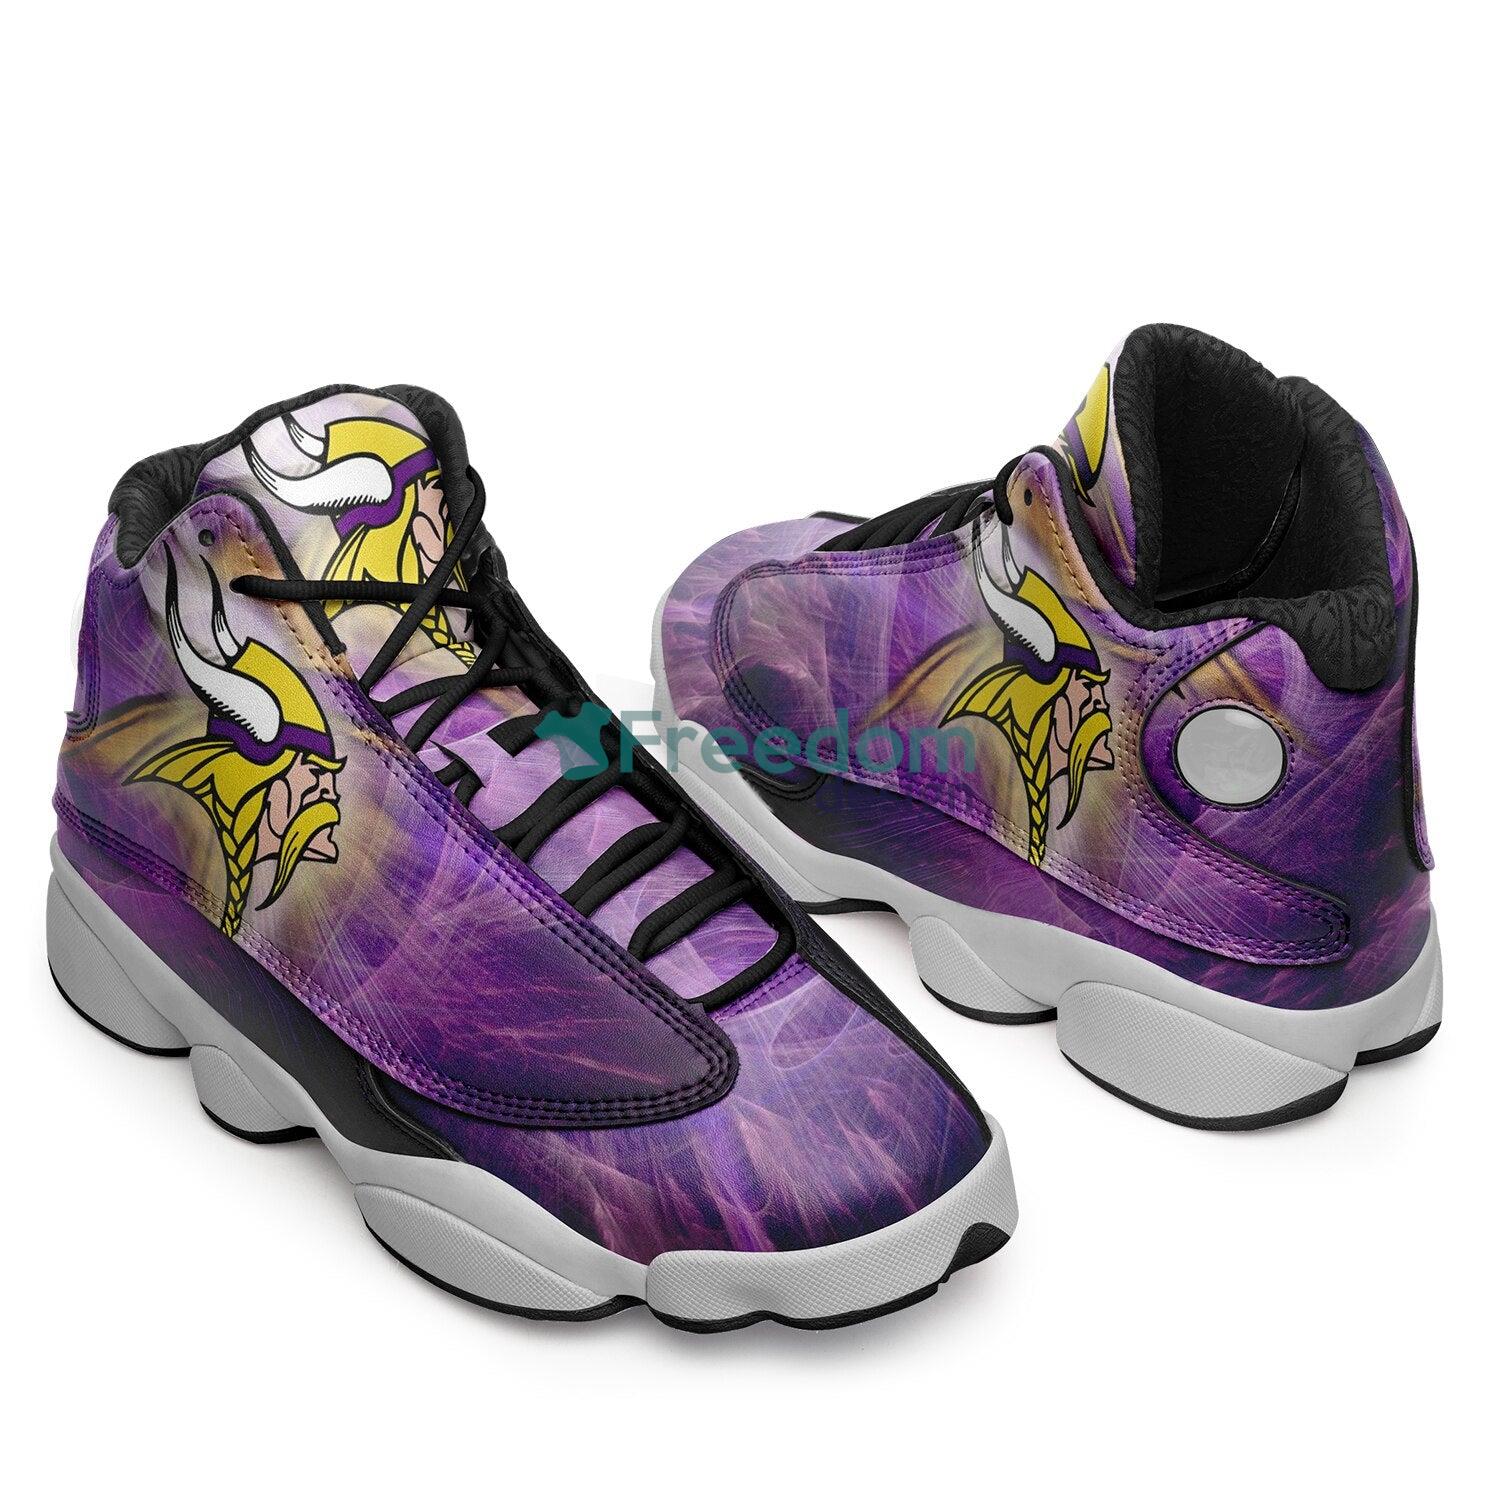 Minnesota Vikings Team Air Jordan 13 Sneaker Shoes For Fans Gift